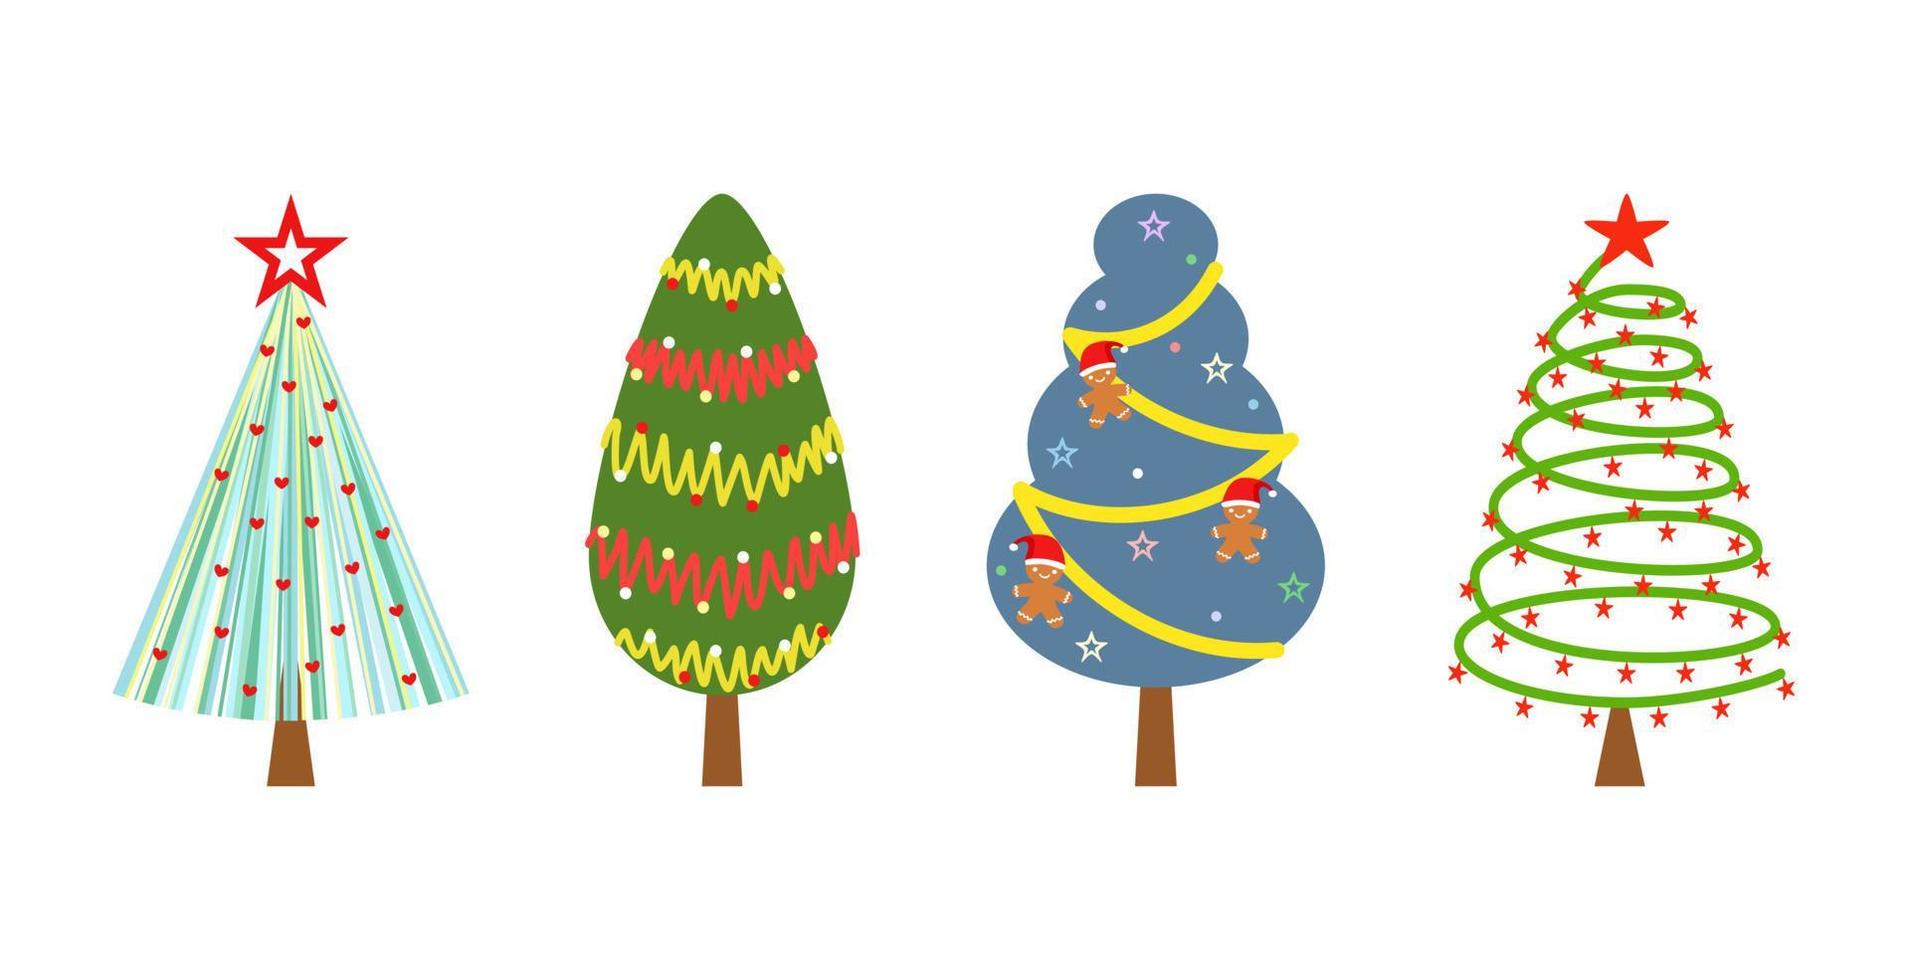 Vektor - Sammlung von Weihnachtsbaum. urlaub, neujahr, weihnachtskonzept. kann zum Drucken, Etikettieren, Aufklebern oder Dekorieren von Web, Karten, Postern und Bannern verwendet werden.